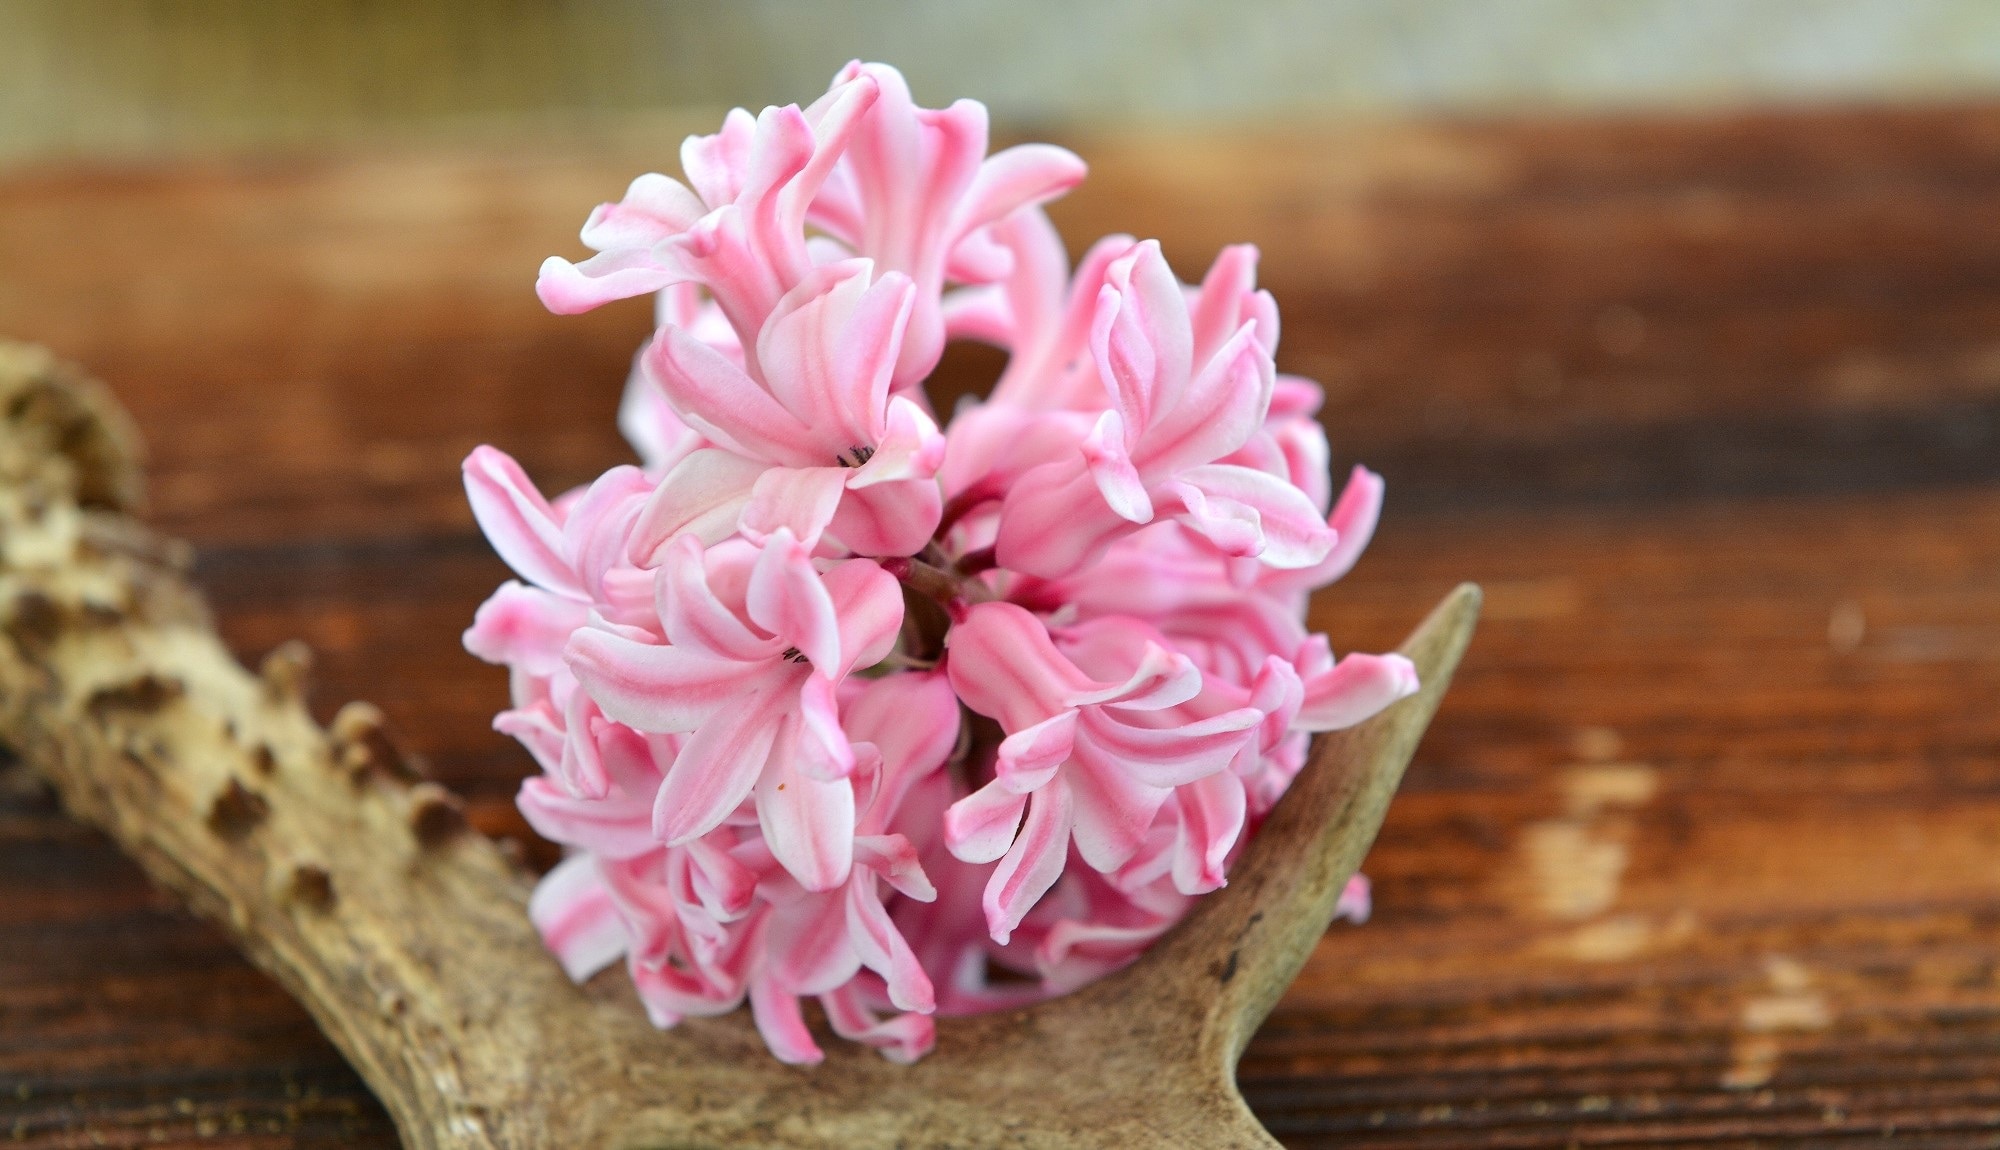 Antler, Hyacinth, Spring Flower, Wood, flower, pink color